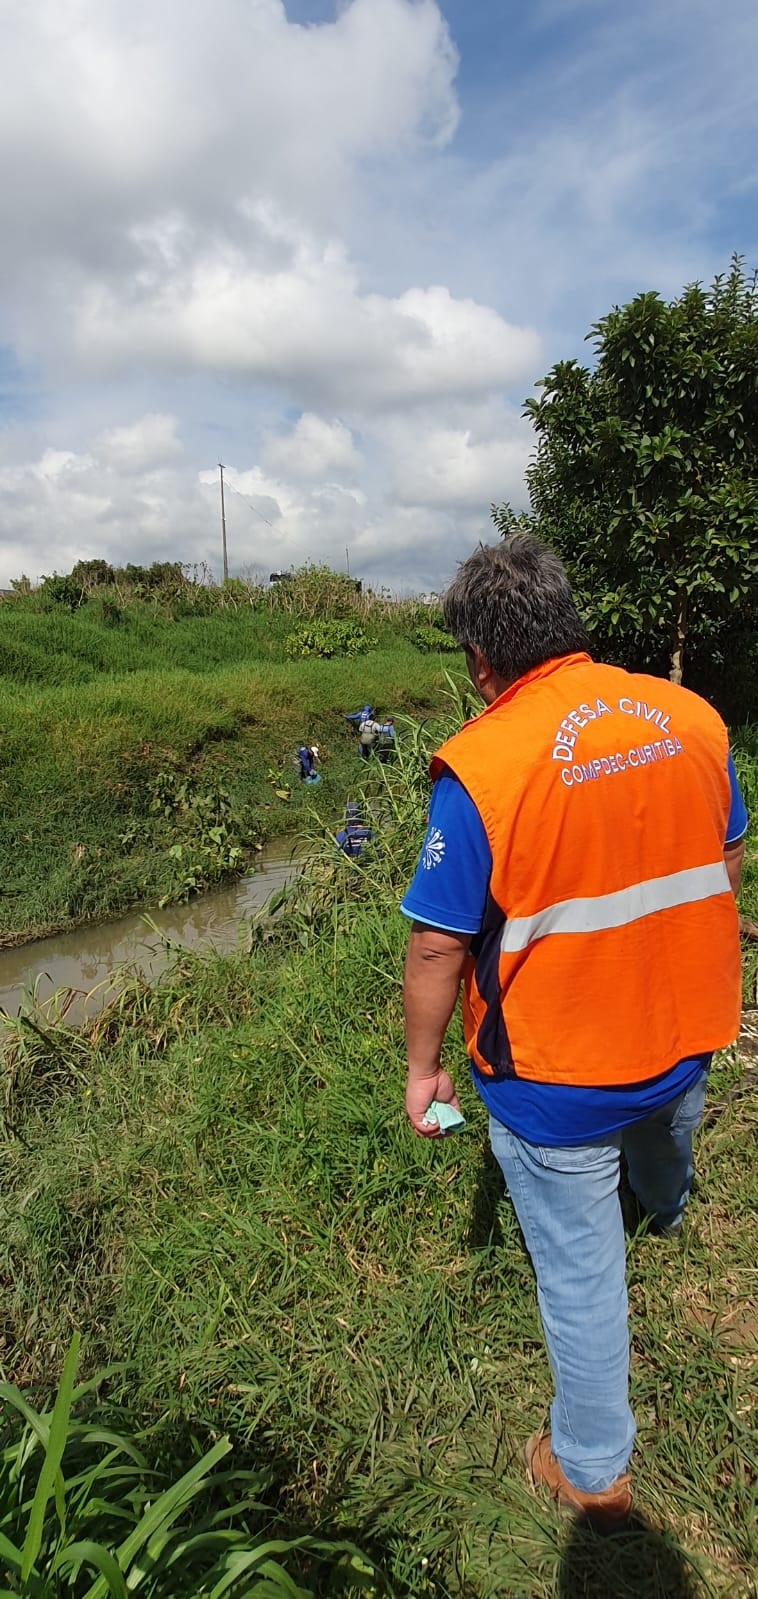 Equipes da Regional Boqueirão trabalham na manhã desta sexta-feira (5/5) na limpeza dos locais atingidos pela forte chuva da noite de quinta-feira (4/5).
Foto: Divulgação